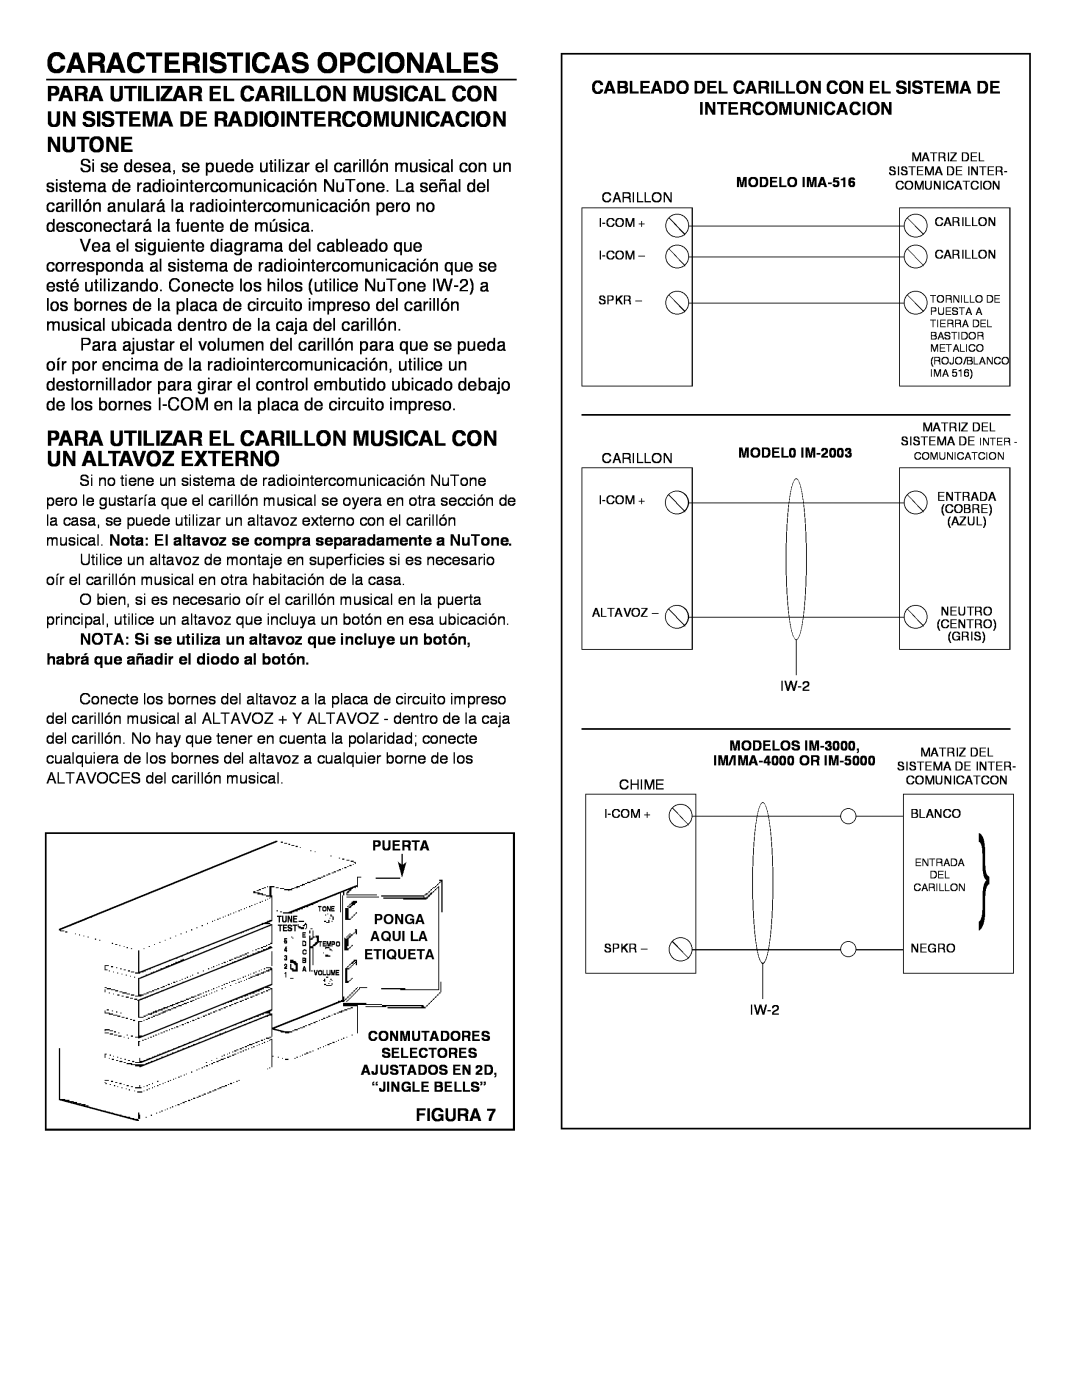 NuTone LA-52 Series Caracteristicas Opcionales, Cableado Del Carillon Con El Sistema De, Intercomunicacion, Figura 